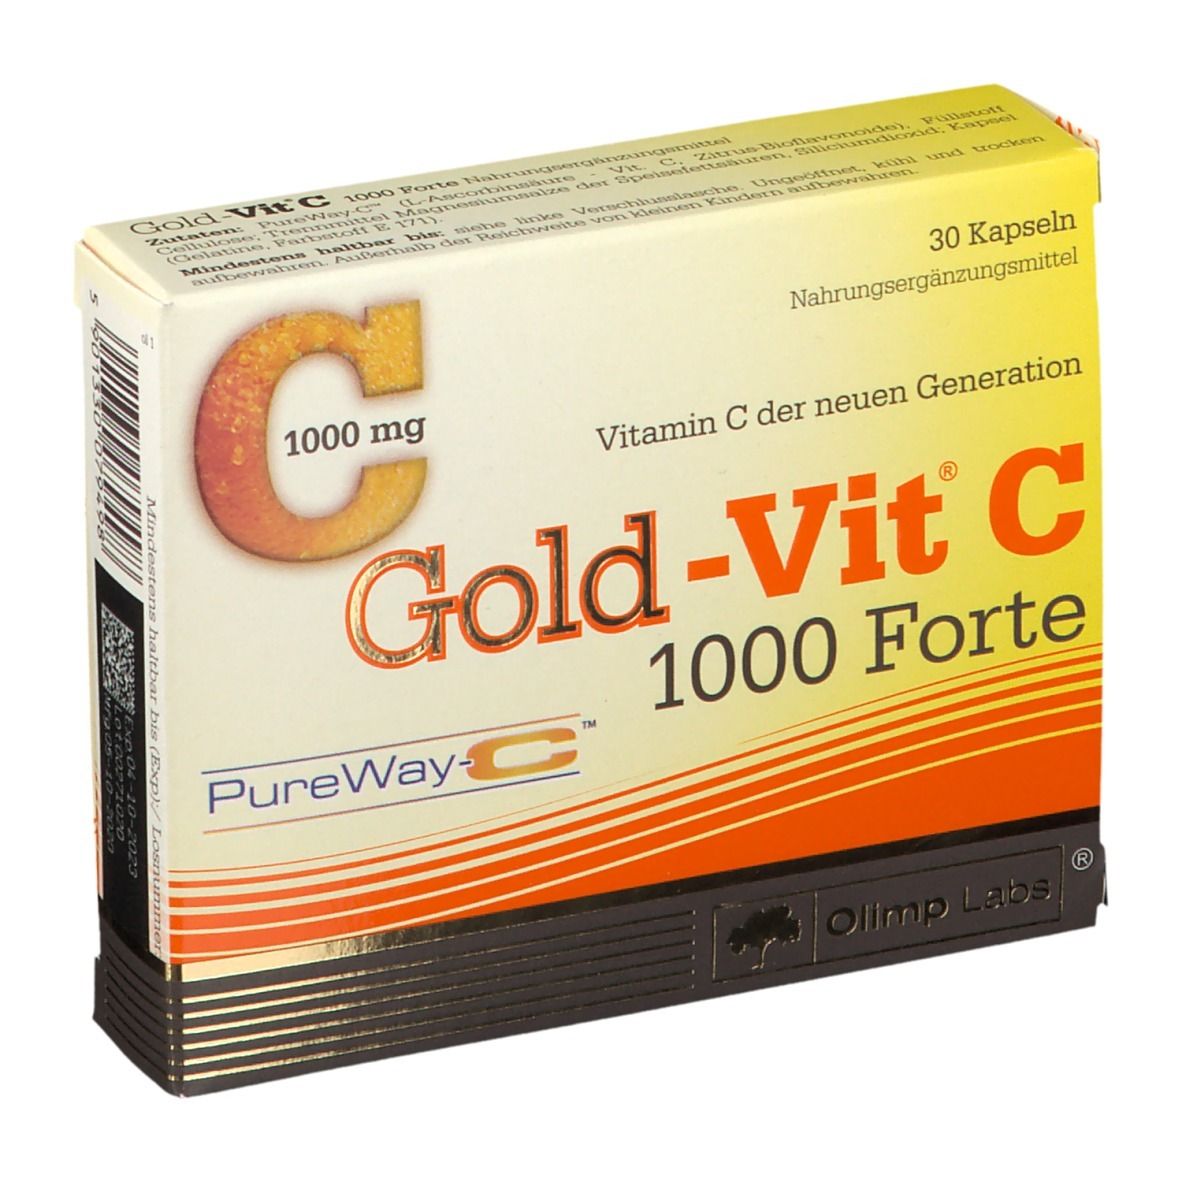 Gold-Vit® C 1000 Forte